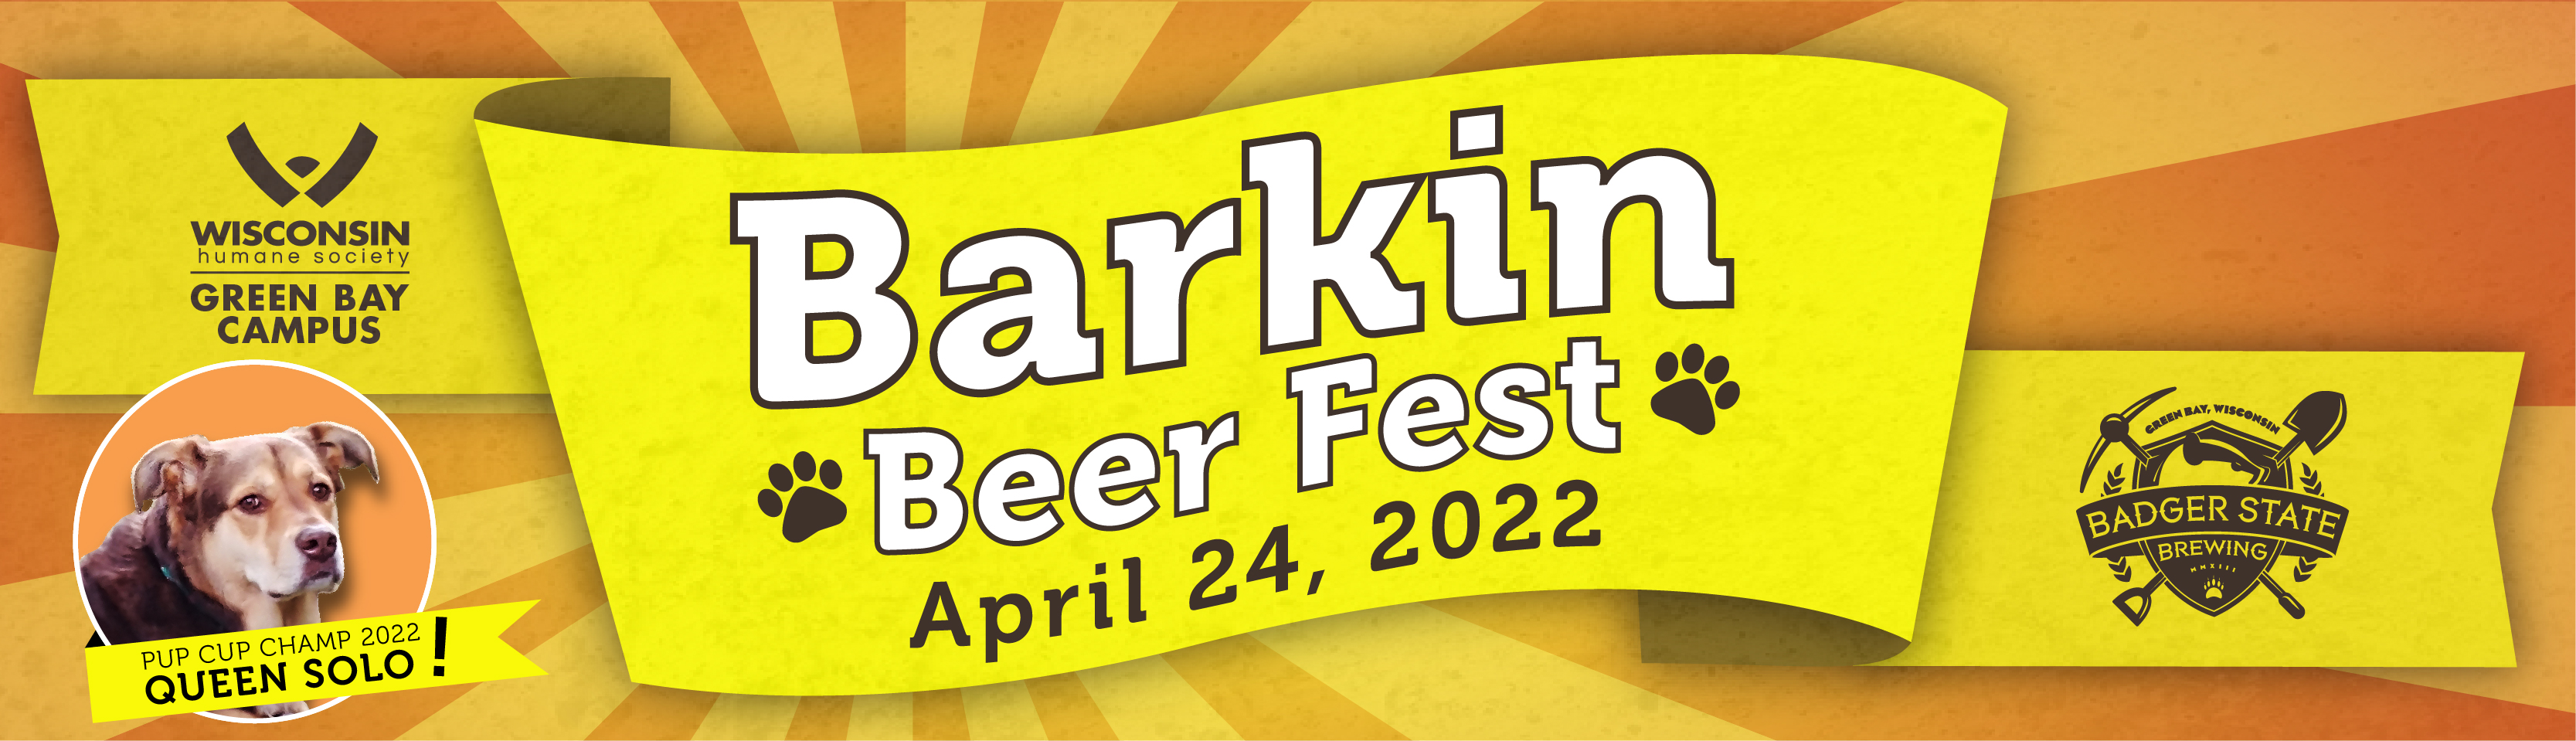 2022 Barkin Beer Fest - eblast header_QUEEN SOLO.jpg